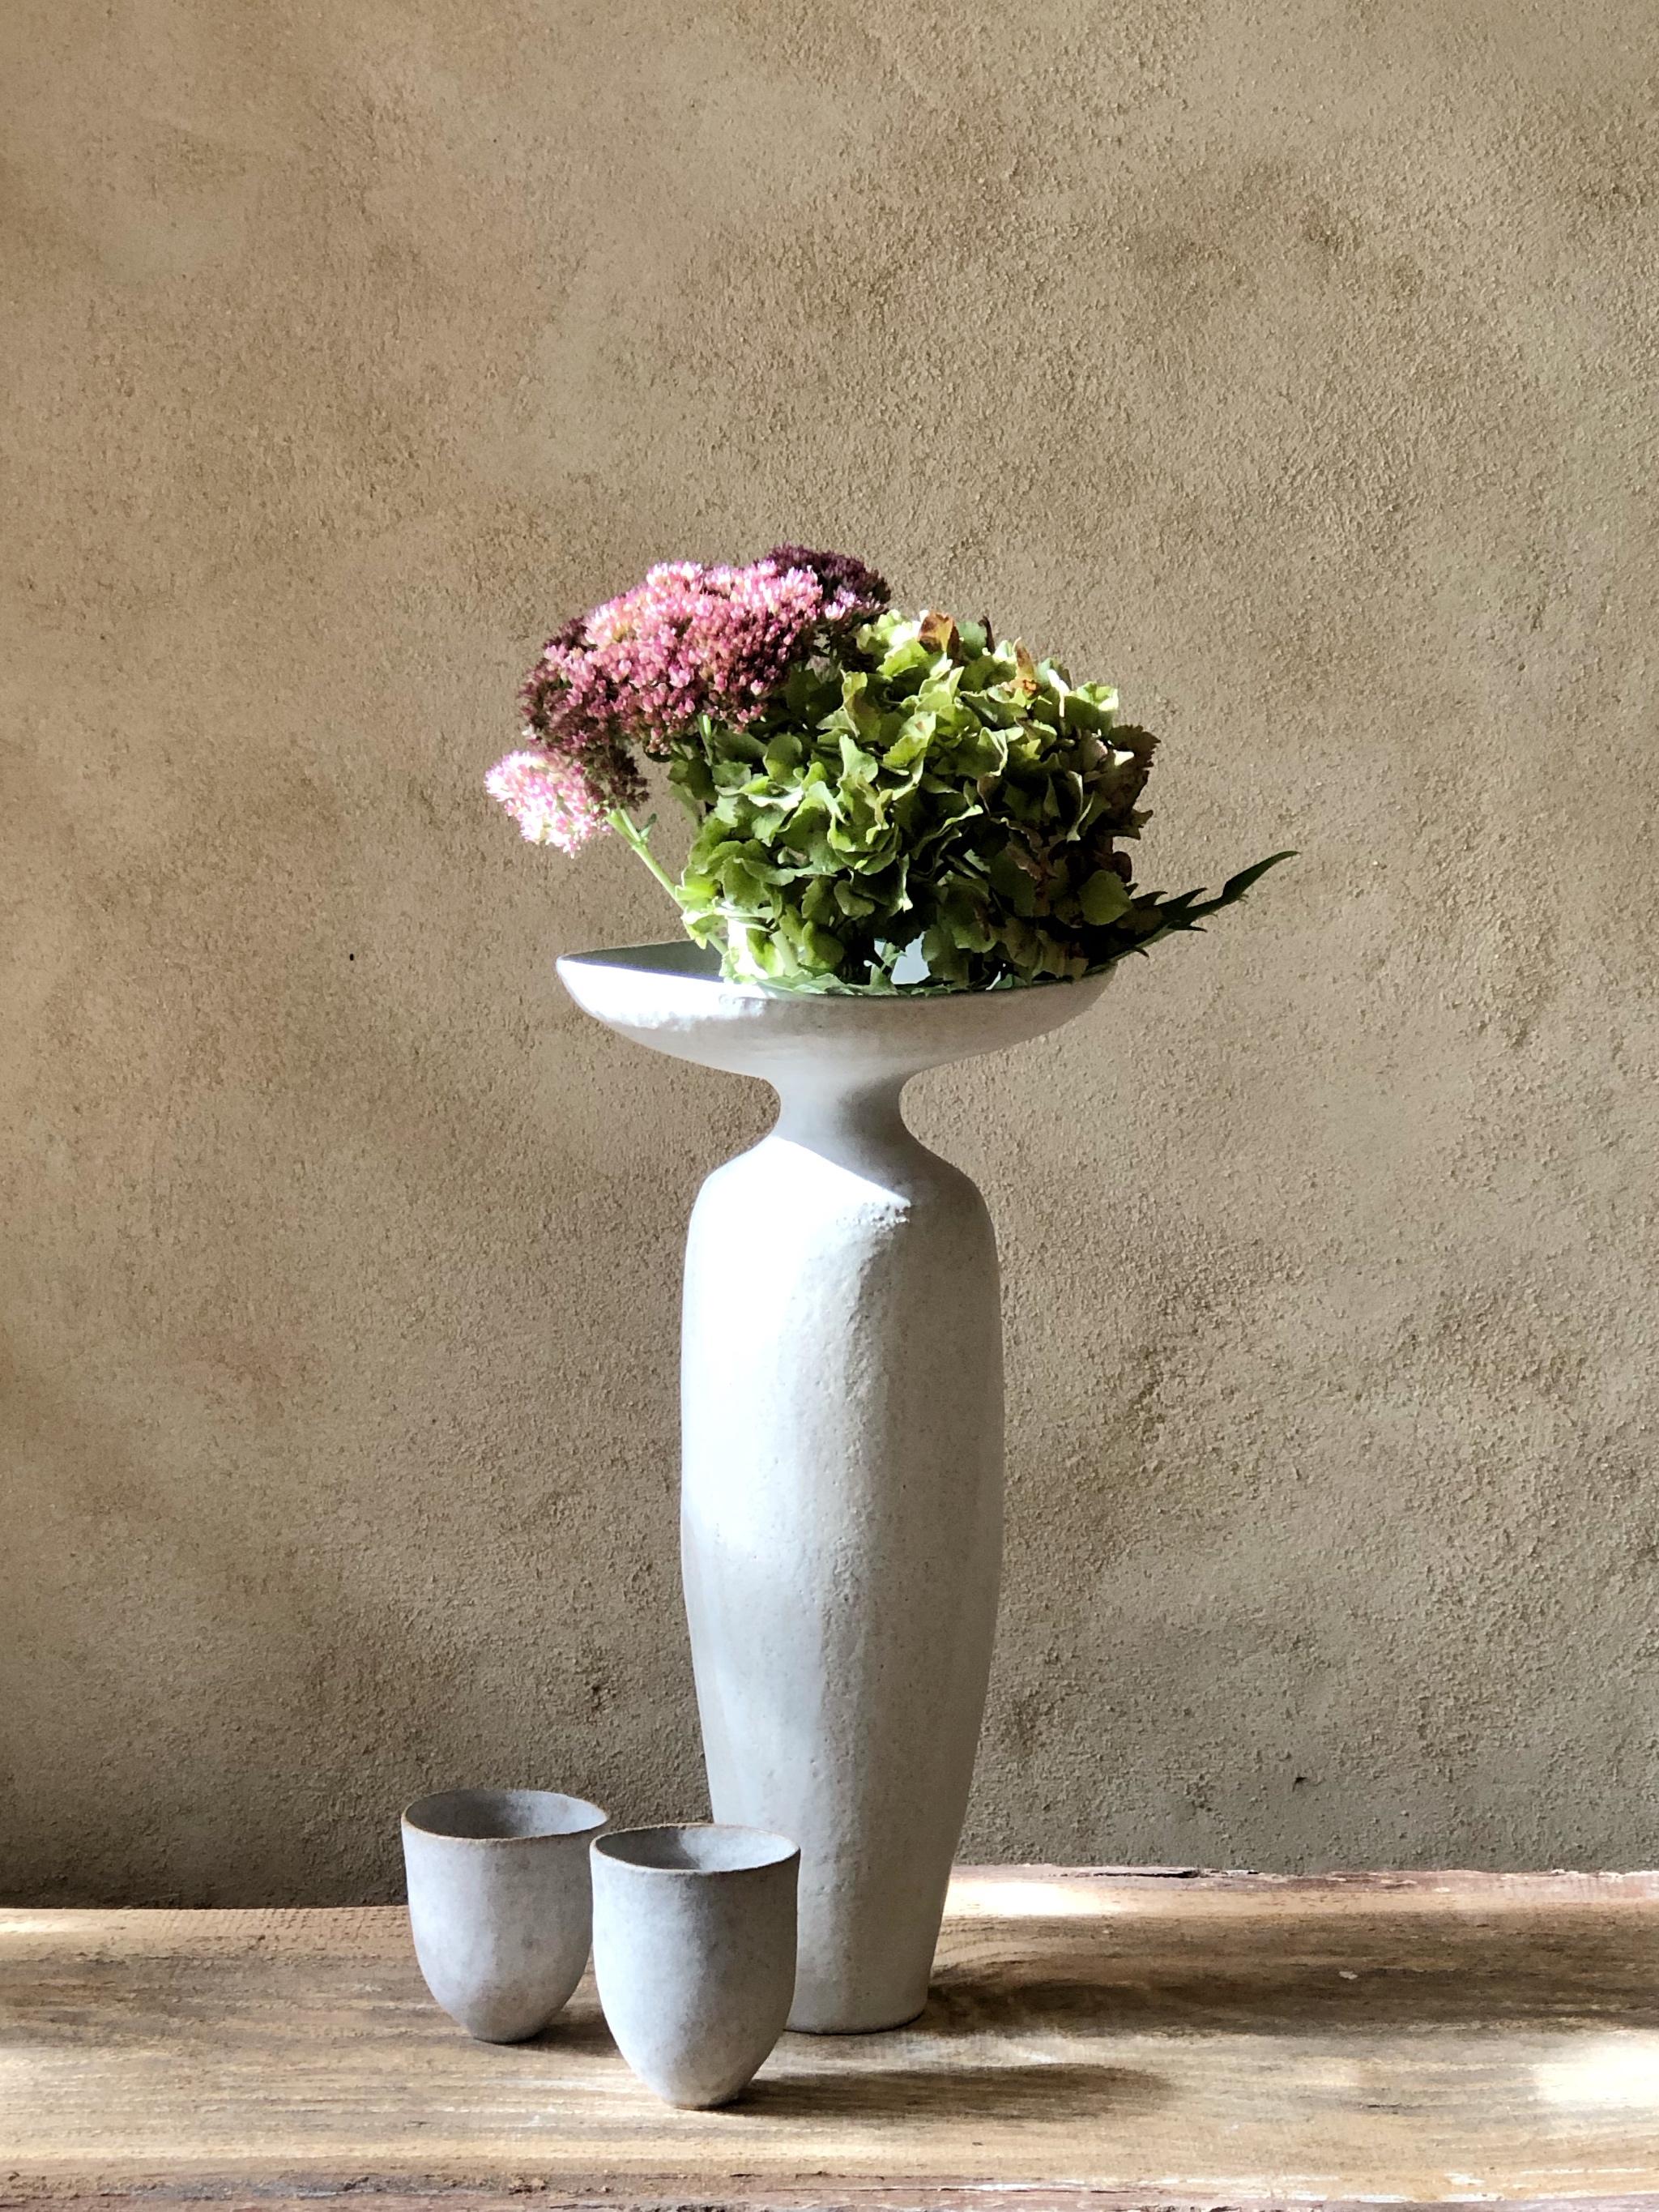 Corolla-Vase von Sophie Vaidie
Einzigartig.
Abmessungen: Ø 15 x H 35 cm. 
MATERIALIEN: Beigefarbenes Steinzeug mit weißer matter Glasur.

Am Anfang stand das Bedürfnis, mit den Händen, dem Tastsinn, den Sinnen zu arbeiten. Dann kam der Wunsch auf,